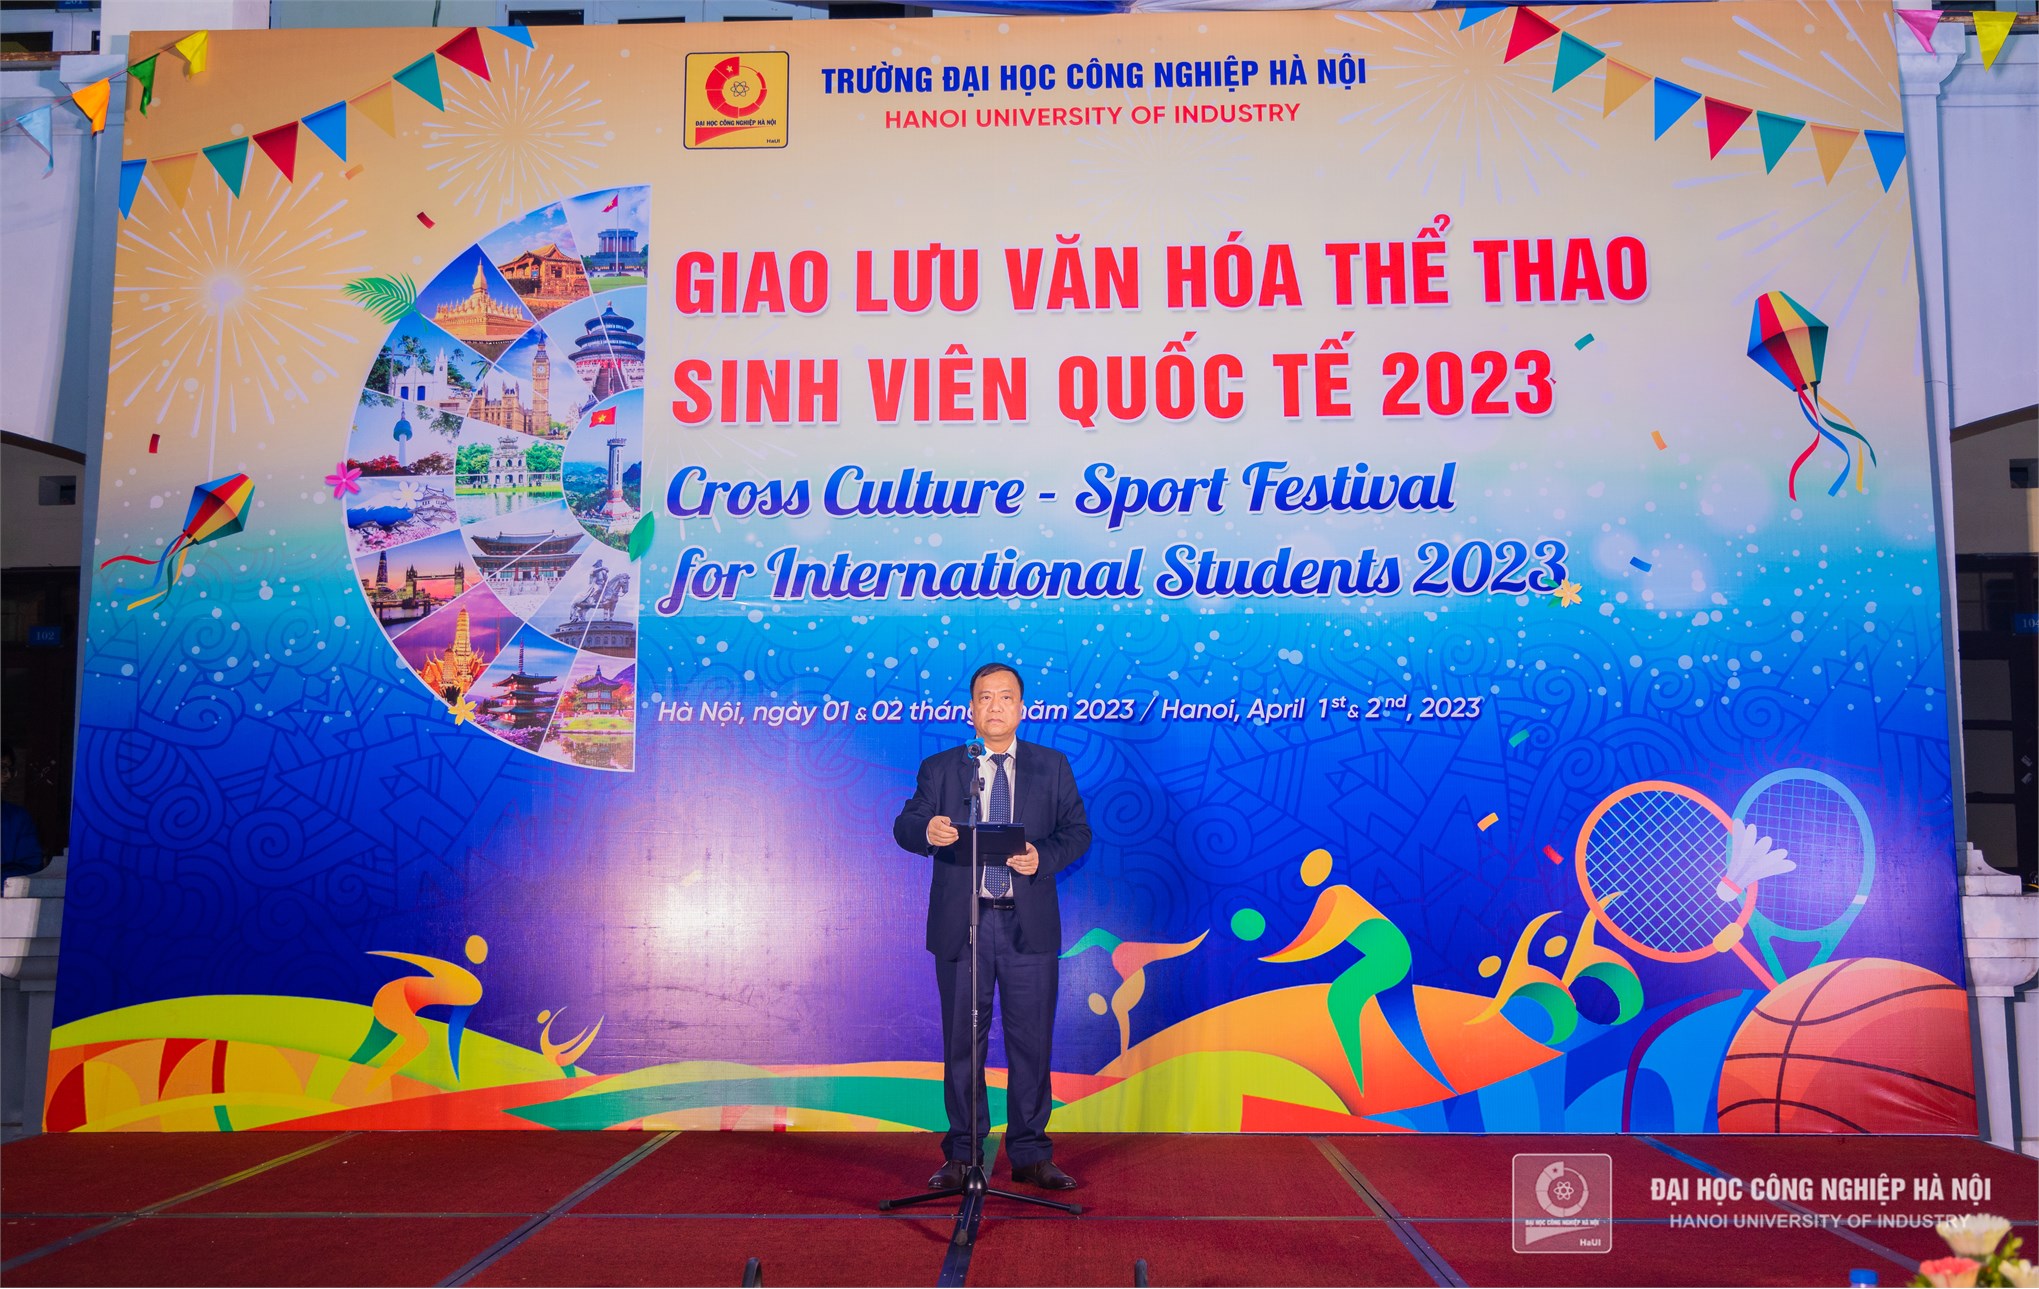 Hội tụ tinh hoa văn hóa thế giới tại ngày hội giao lưu văn hóa thể thao sinh viên quốc tế năm 2023